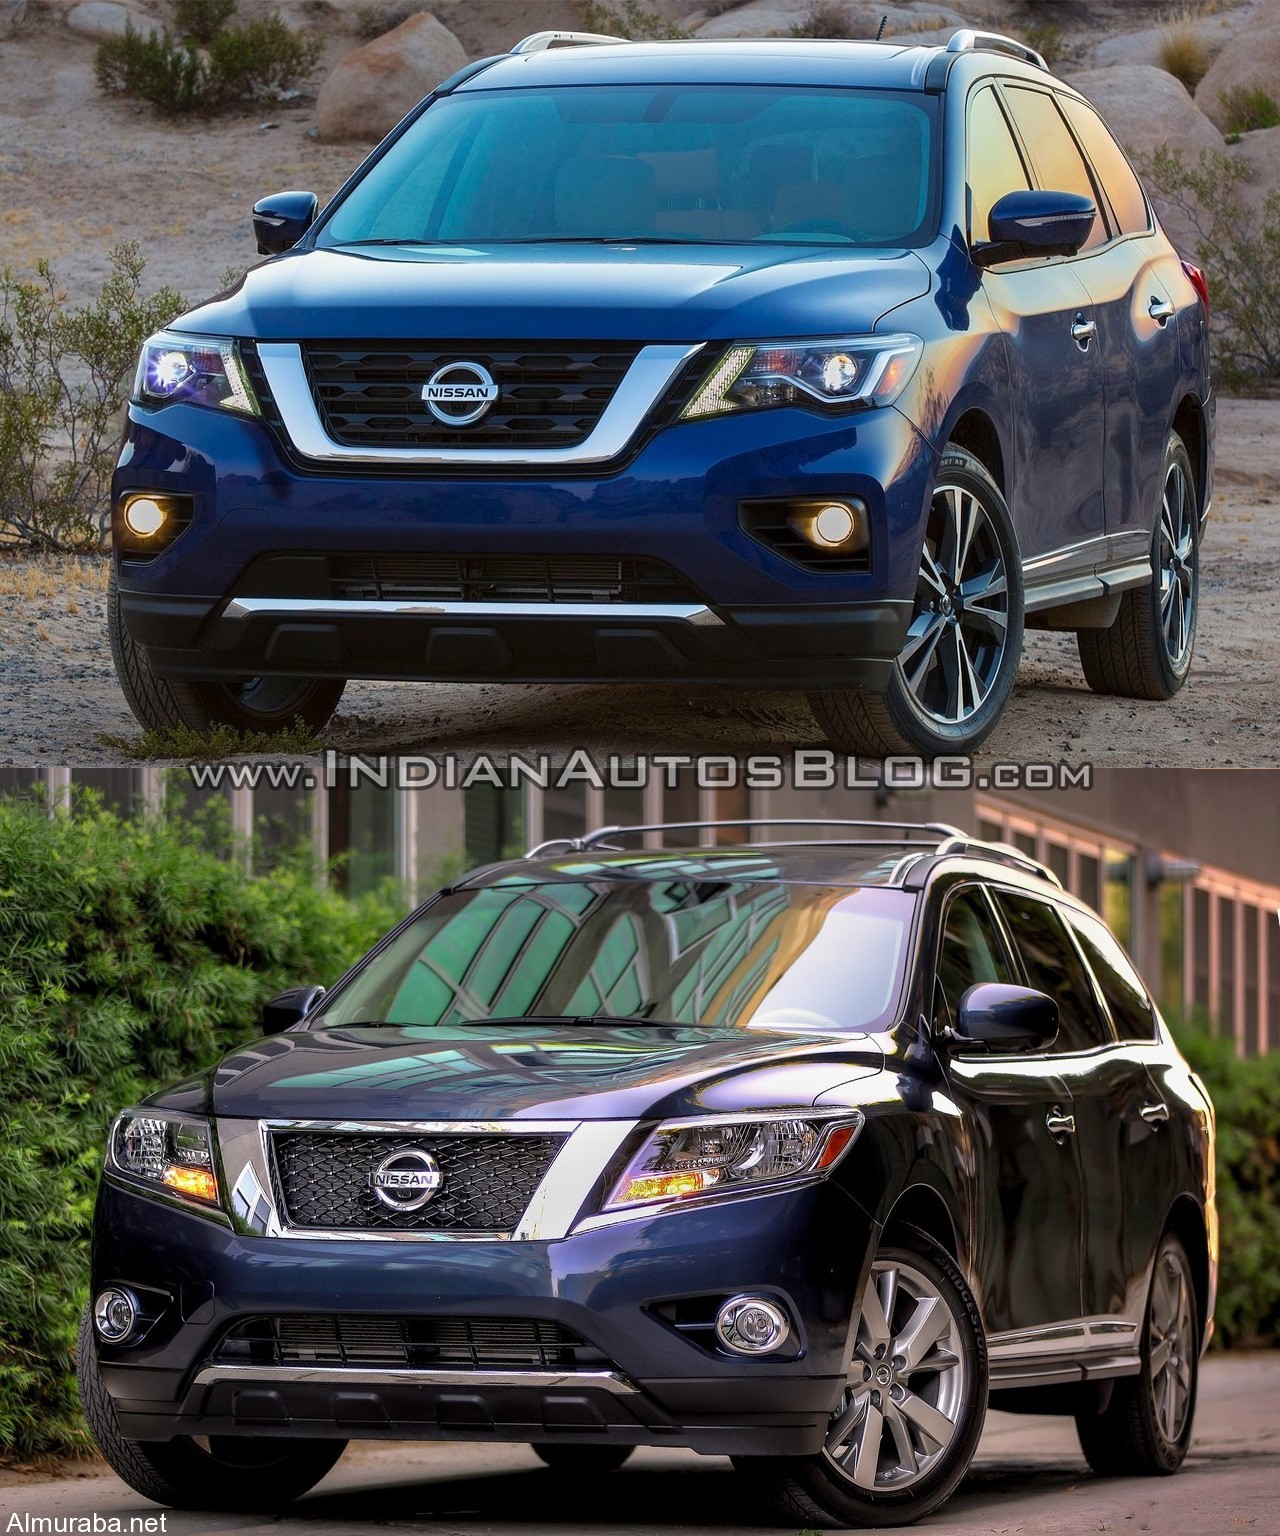 "مقارنة بالصور" بين موديلي "نيسان" باثفايندر 2017 و 2016 Nissan Pathfinder 1